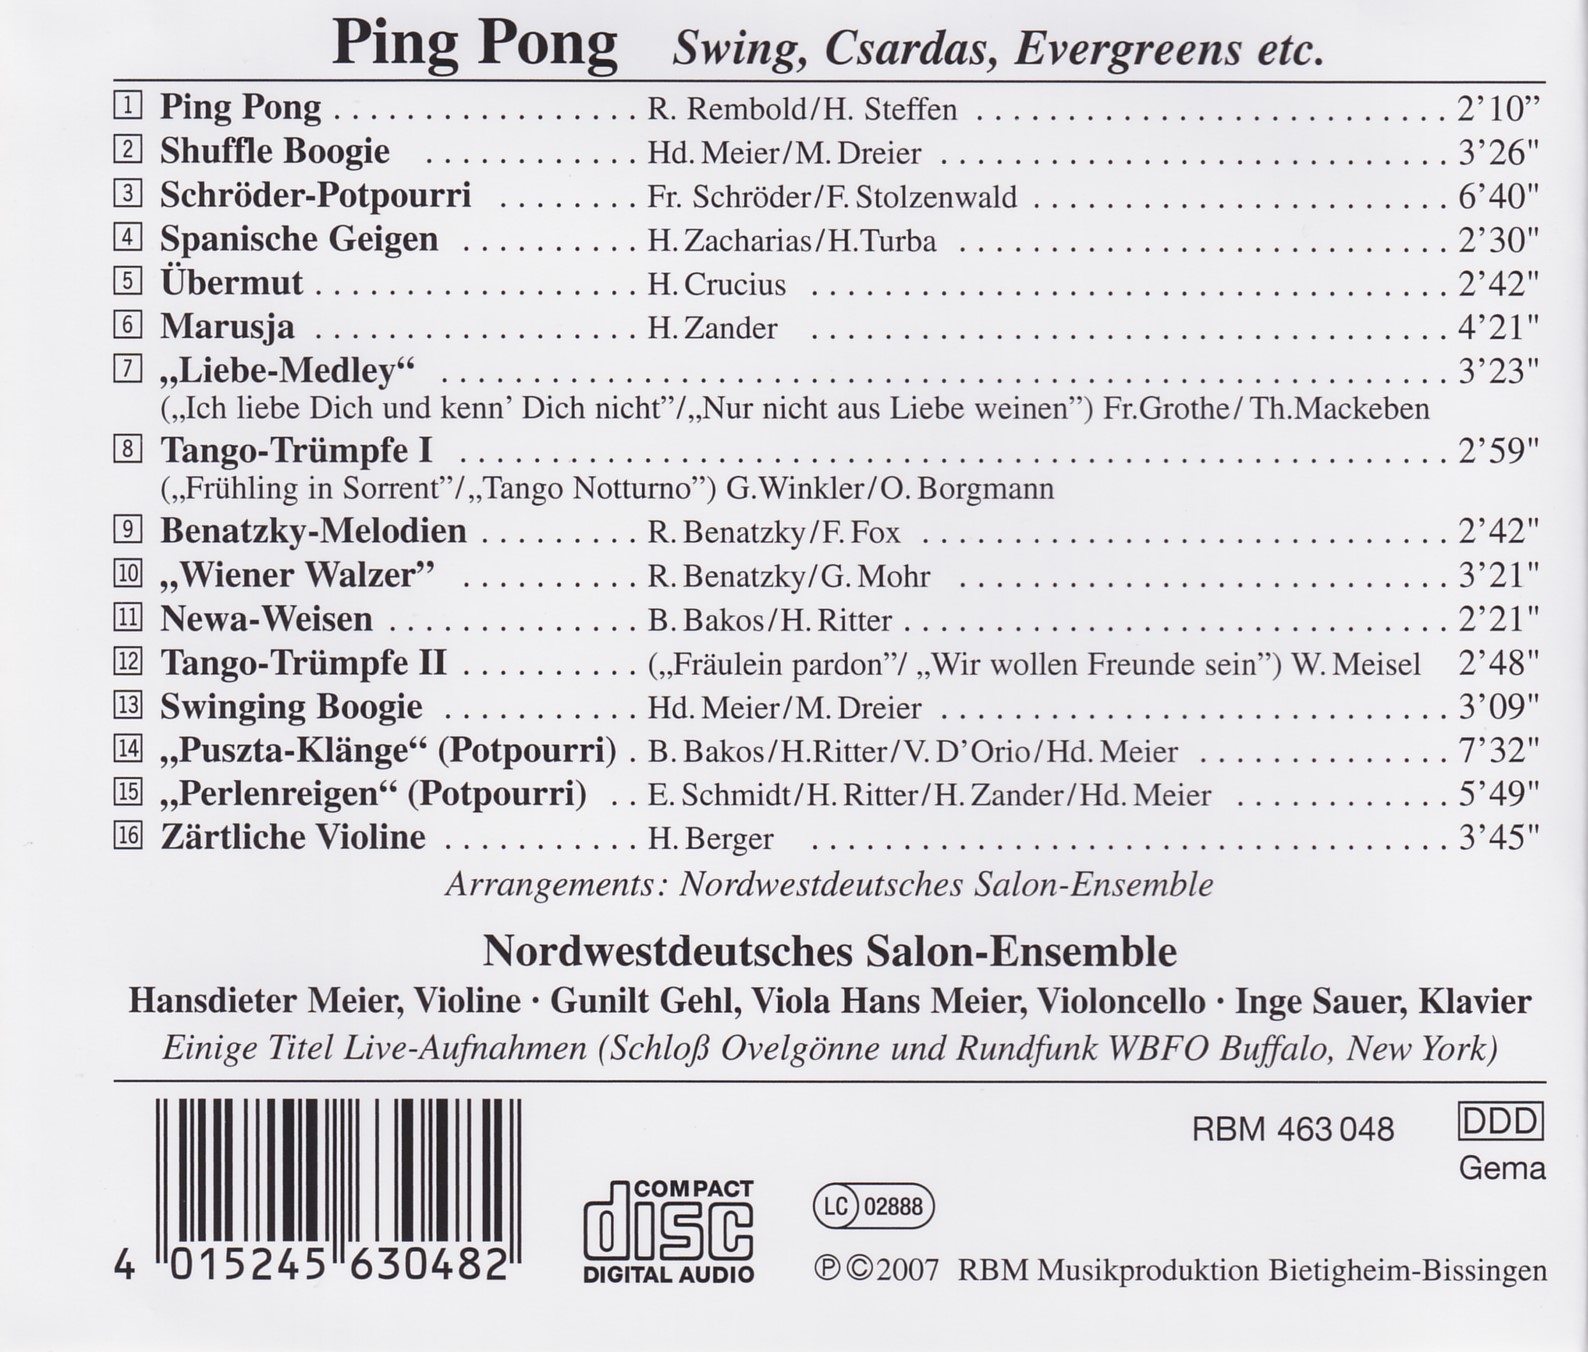 Ping  Pong - Swing, Csardas, Evergreens etc. 